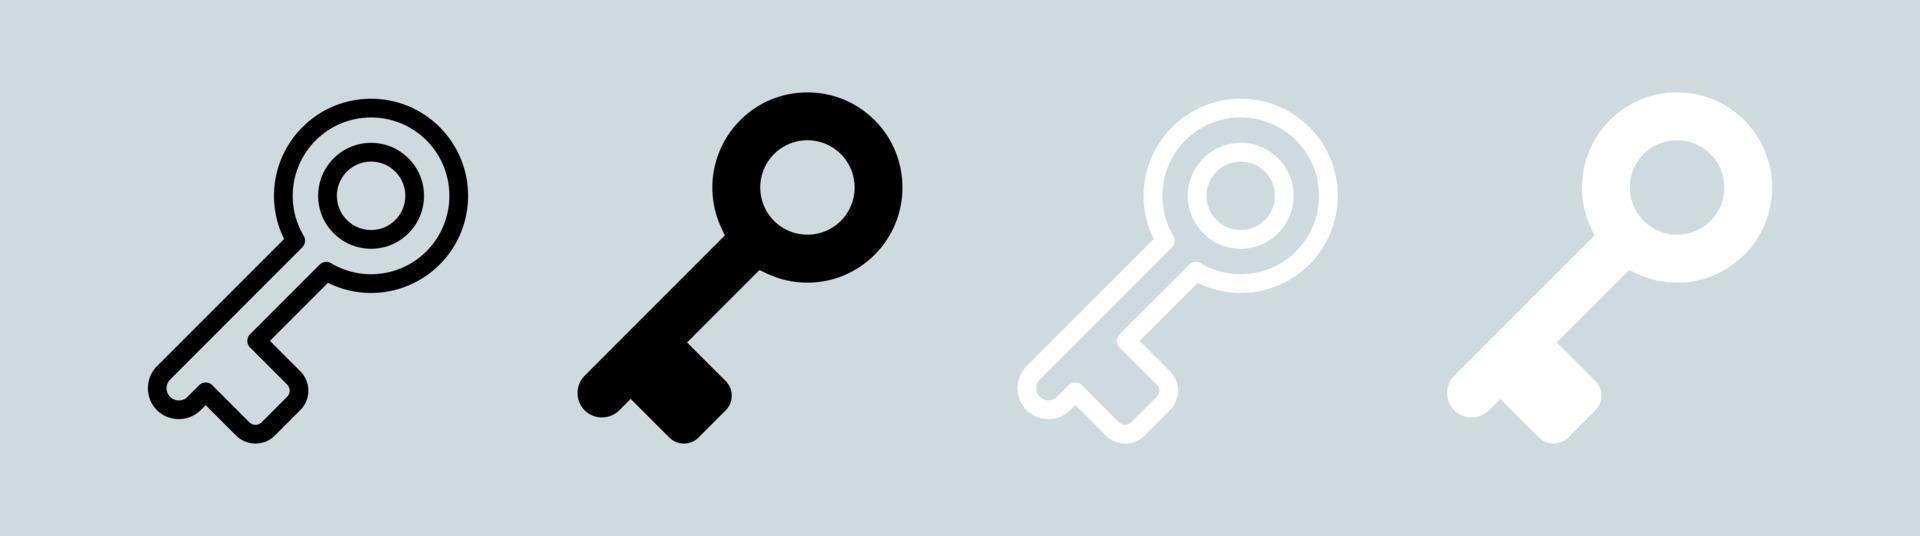 icona chiave nei colori bianco e nero. illustrazione vettoriale di segni di apertura.